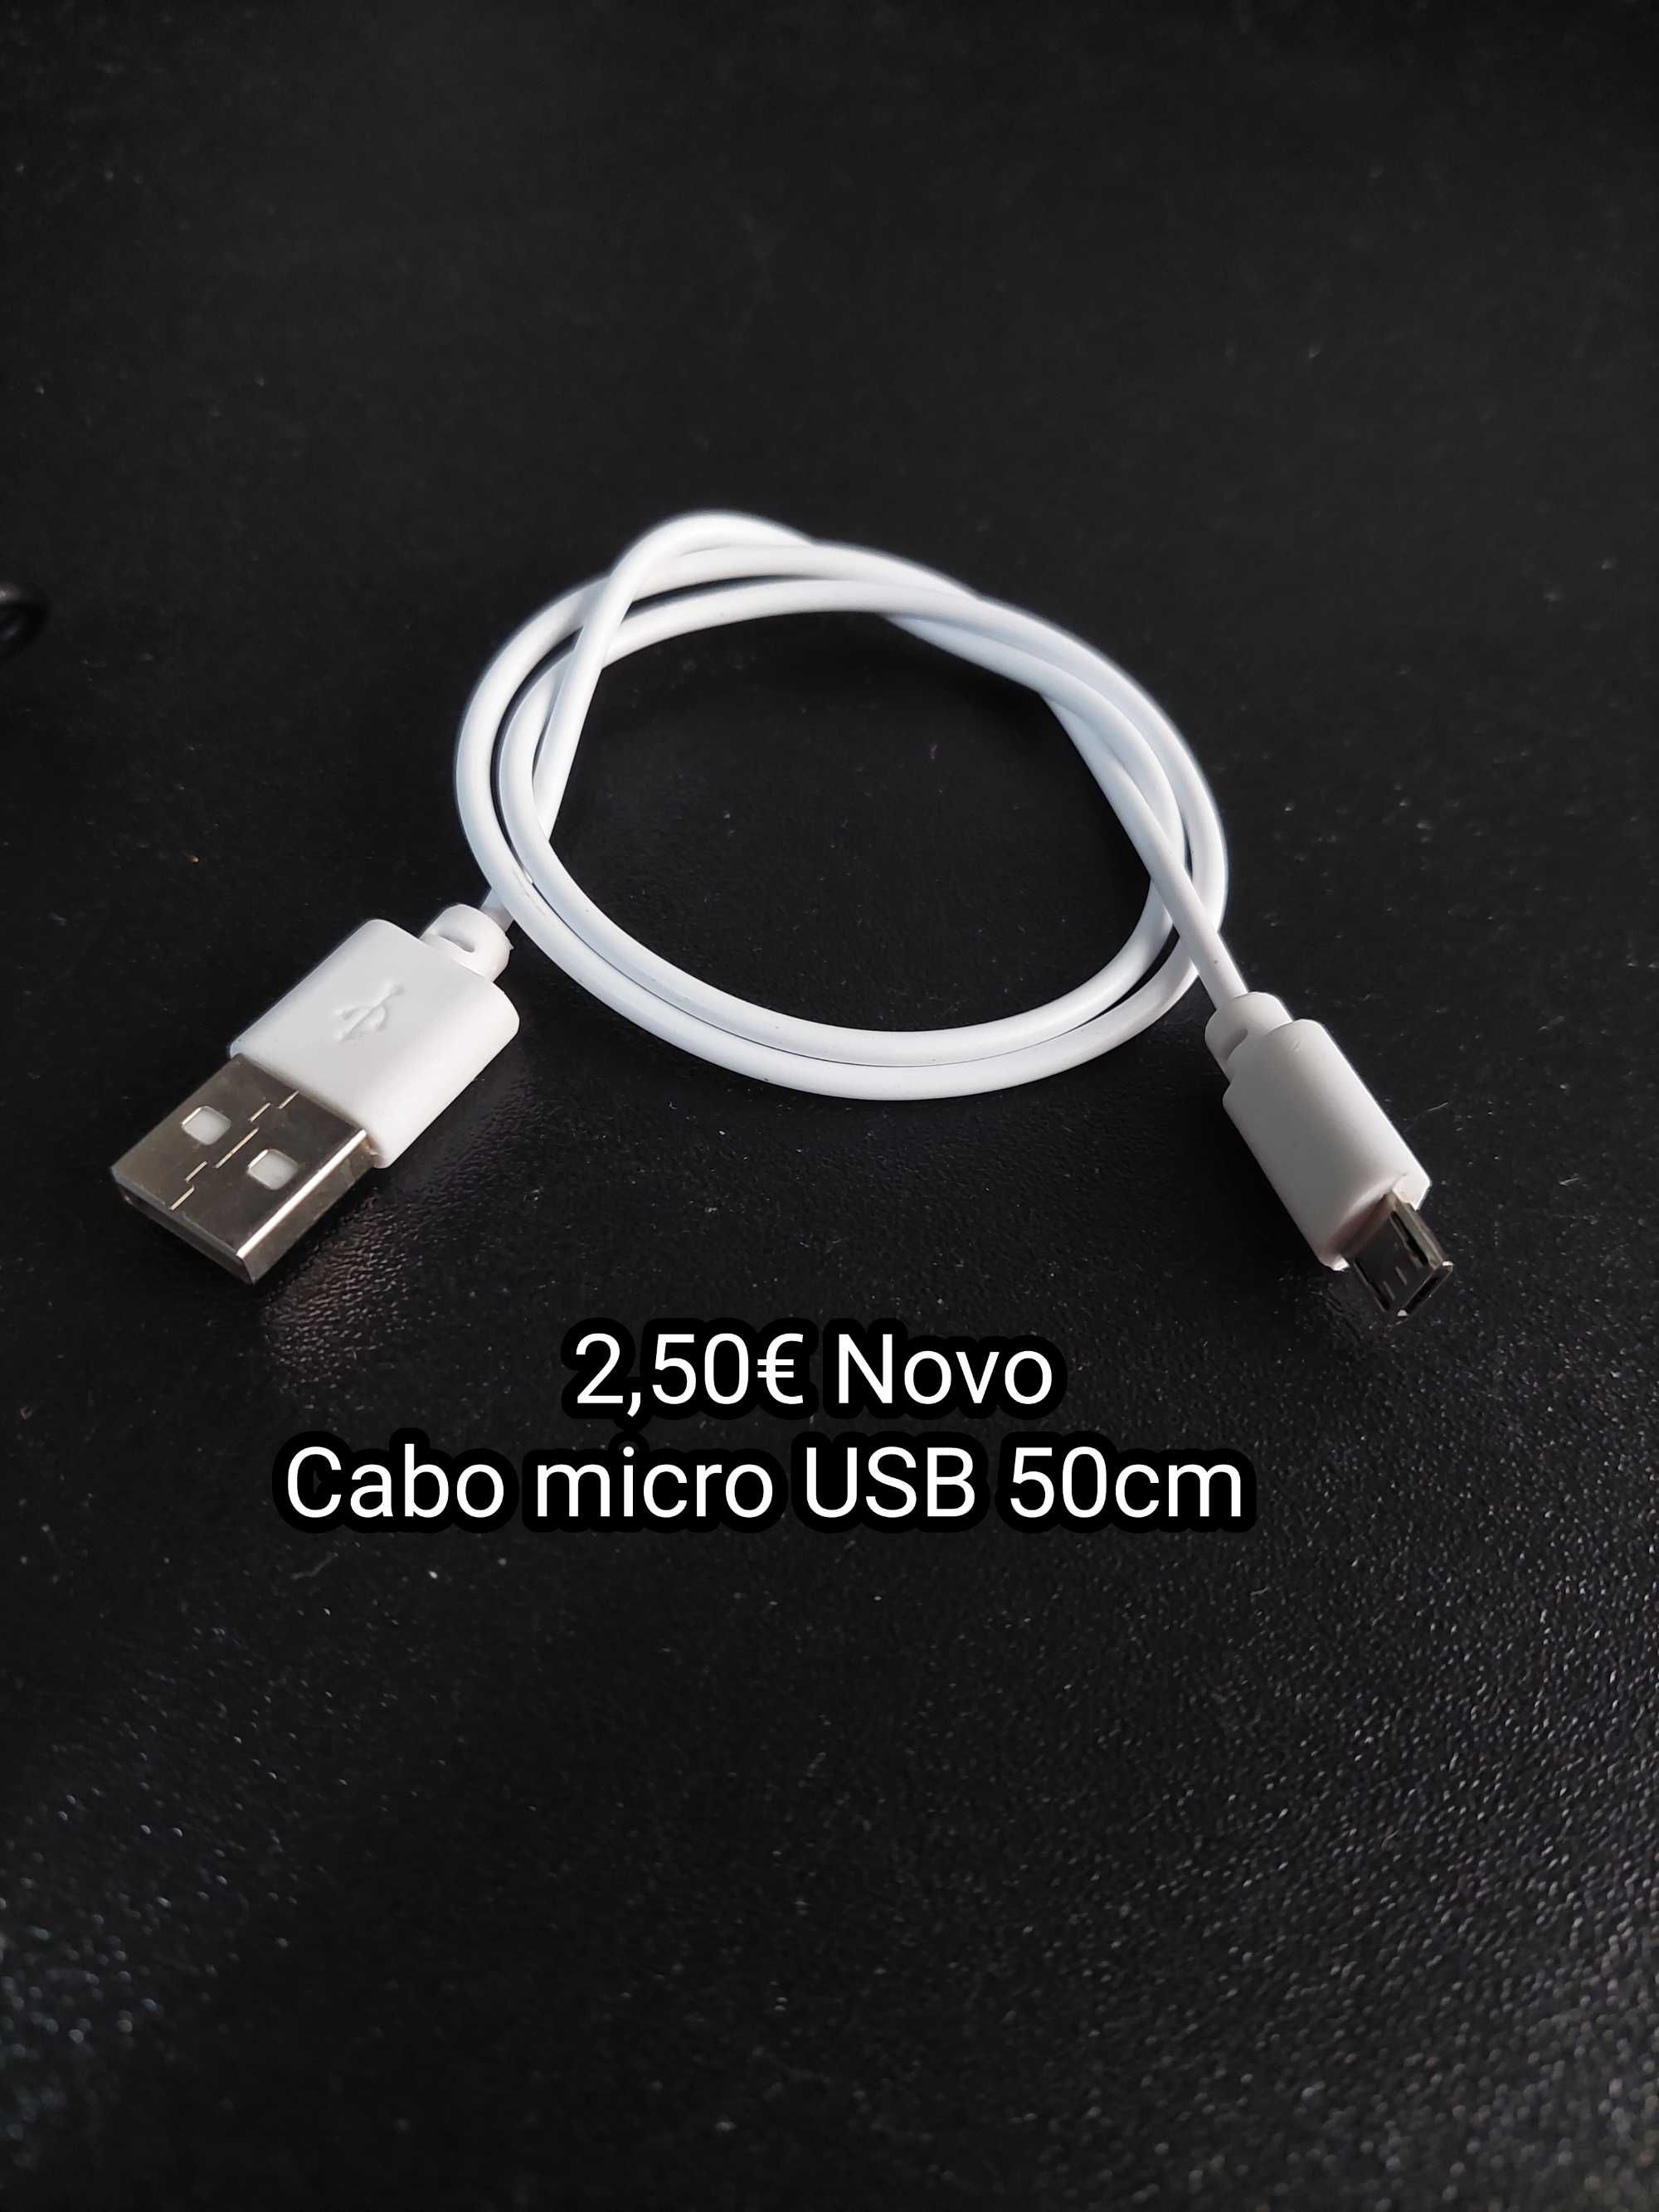 Cabos Micro USB como novos